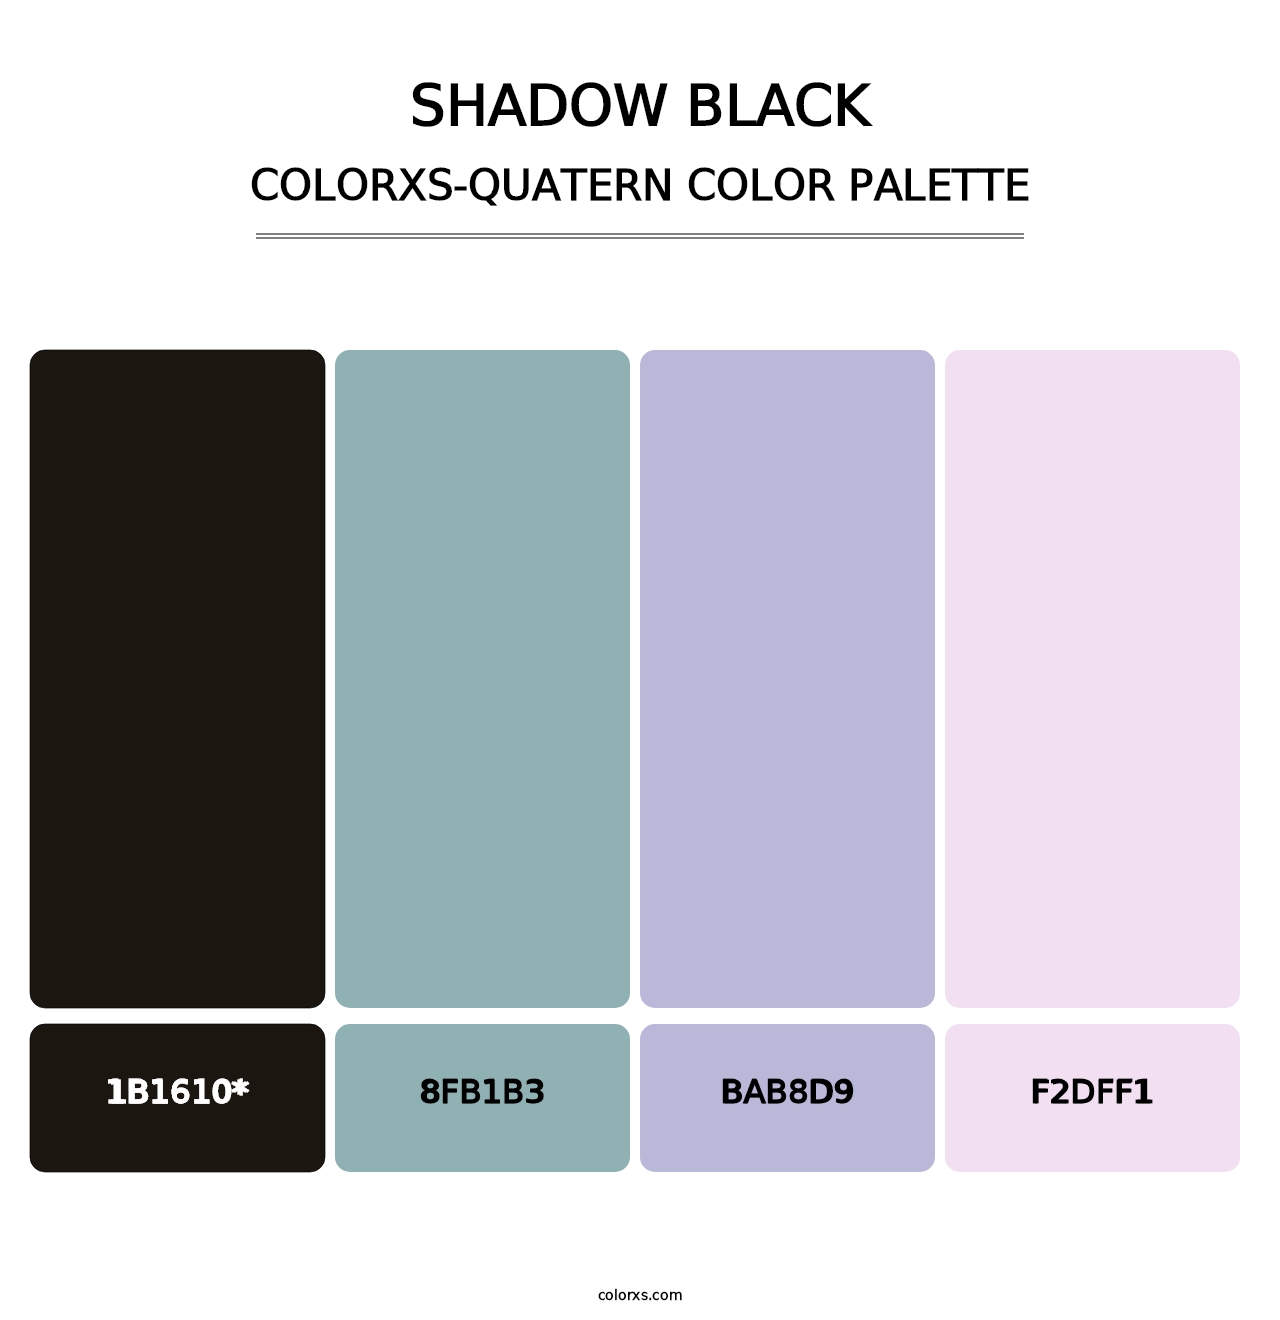 Shadow Black - Colorxs Quatern Palette